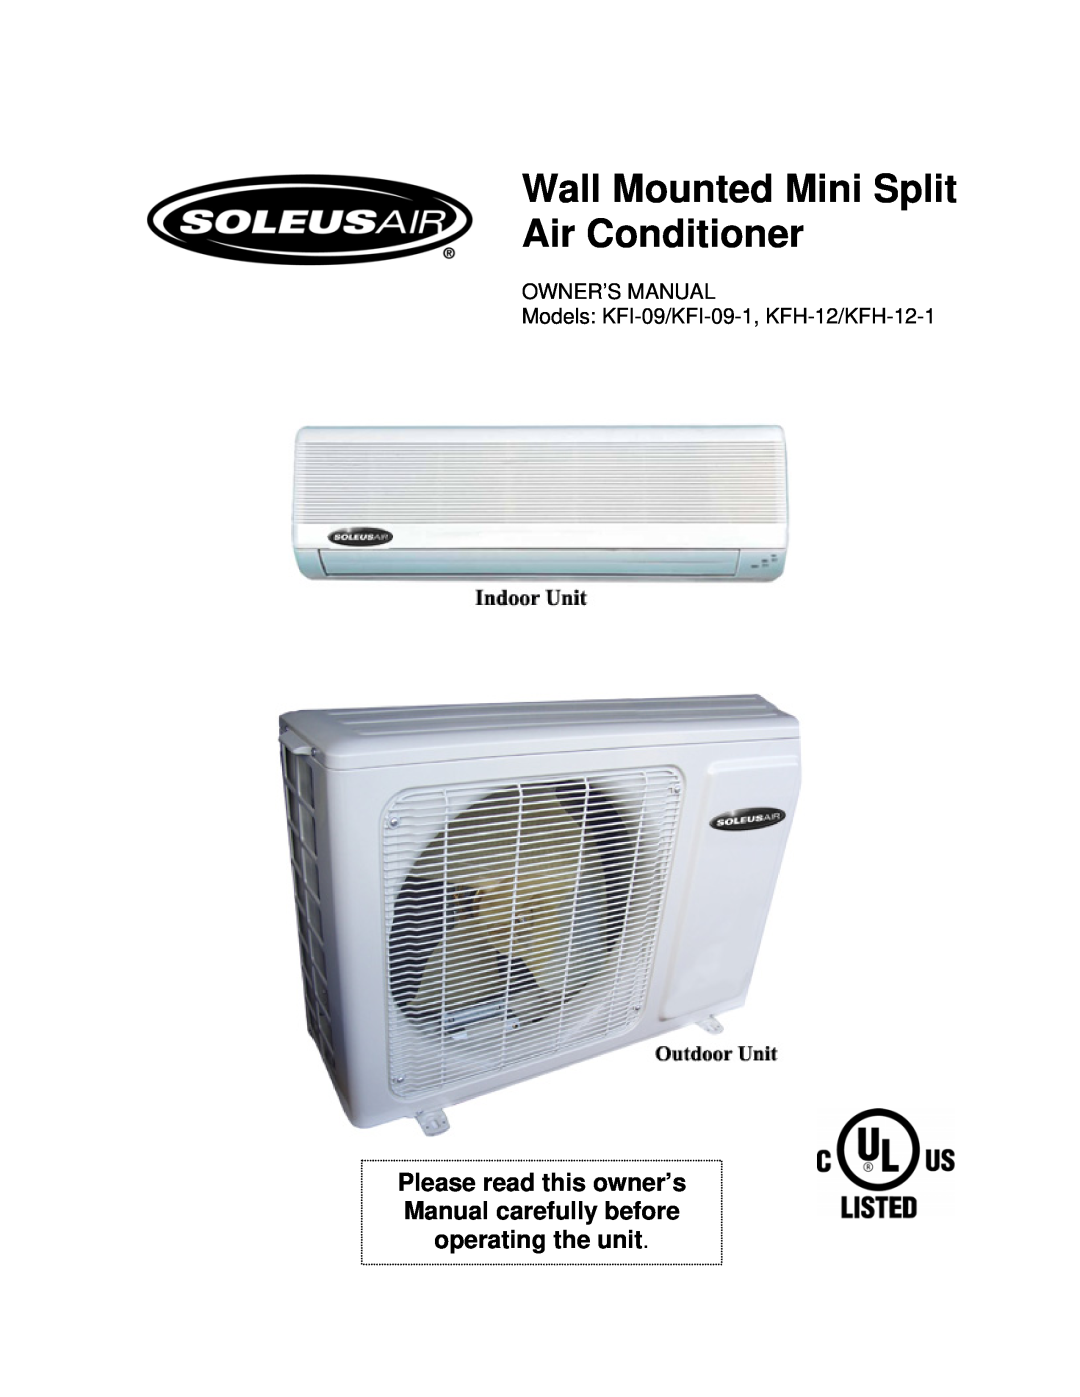 Soleus Air KFI-09/KFI-09-1, KFH-12/KFH-12-1 owner manual Wall Mounted Mini Split Air Conditioner, Owner’S Manual 